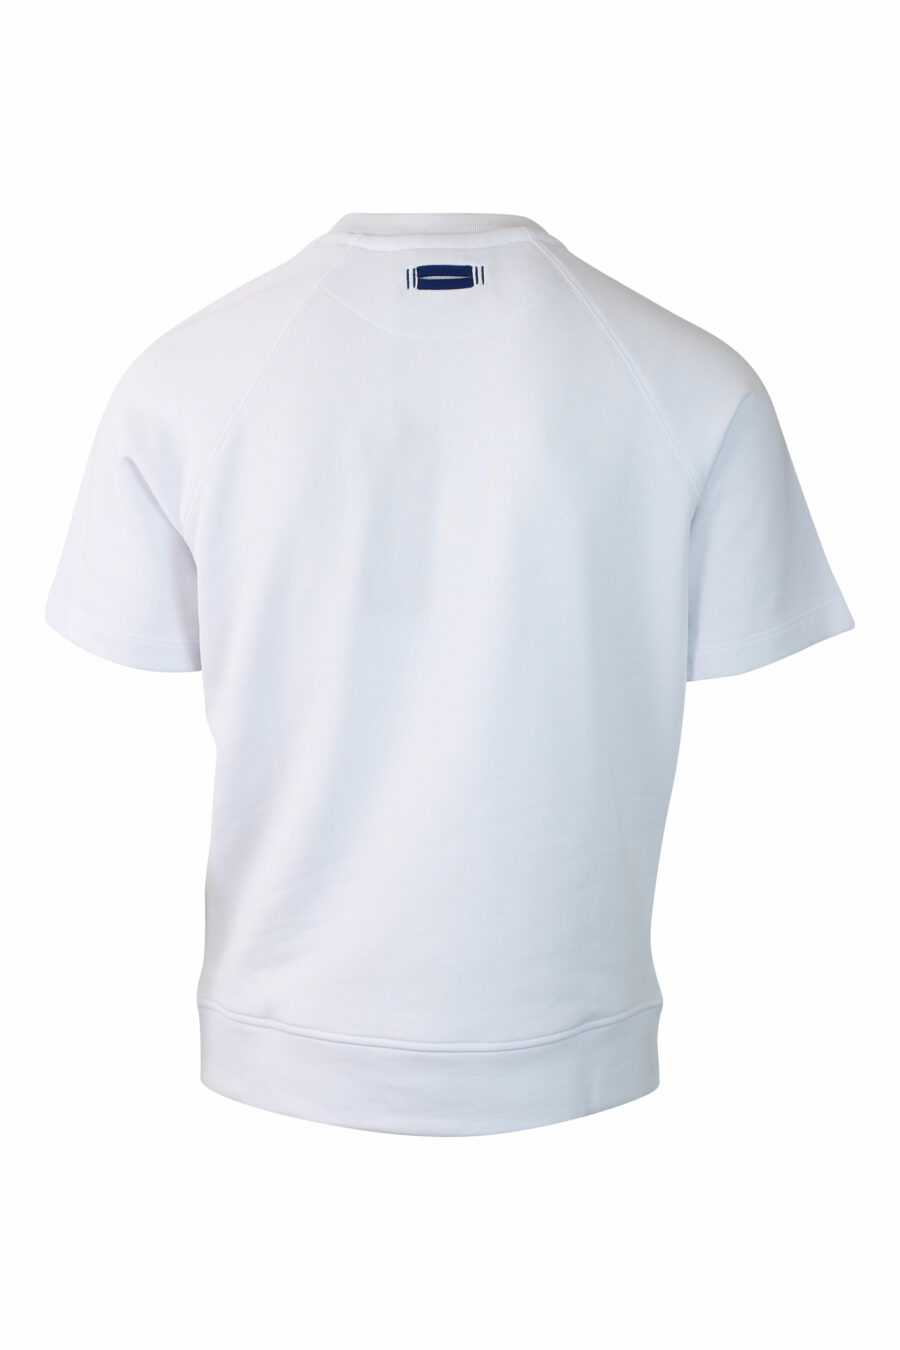 Weißes T-Shirt mit aufgesticktem monochromen Mini-Logo - IMG 0126